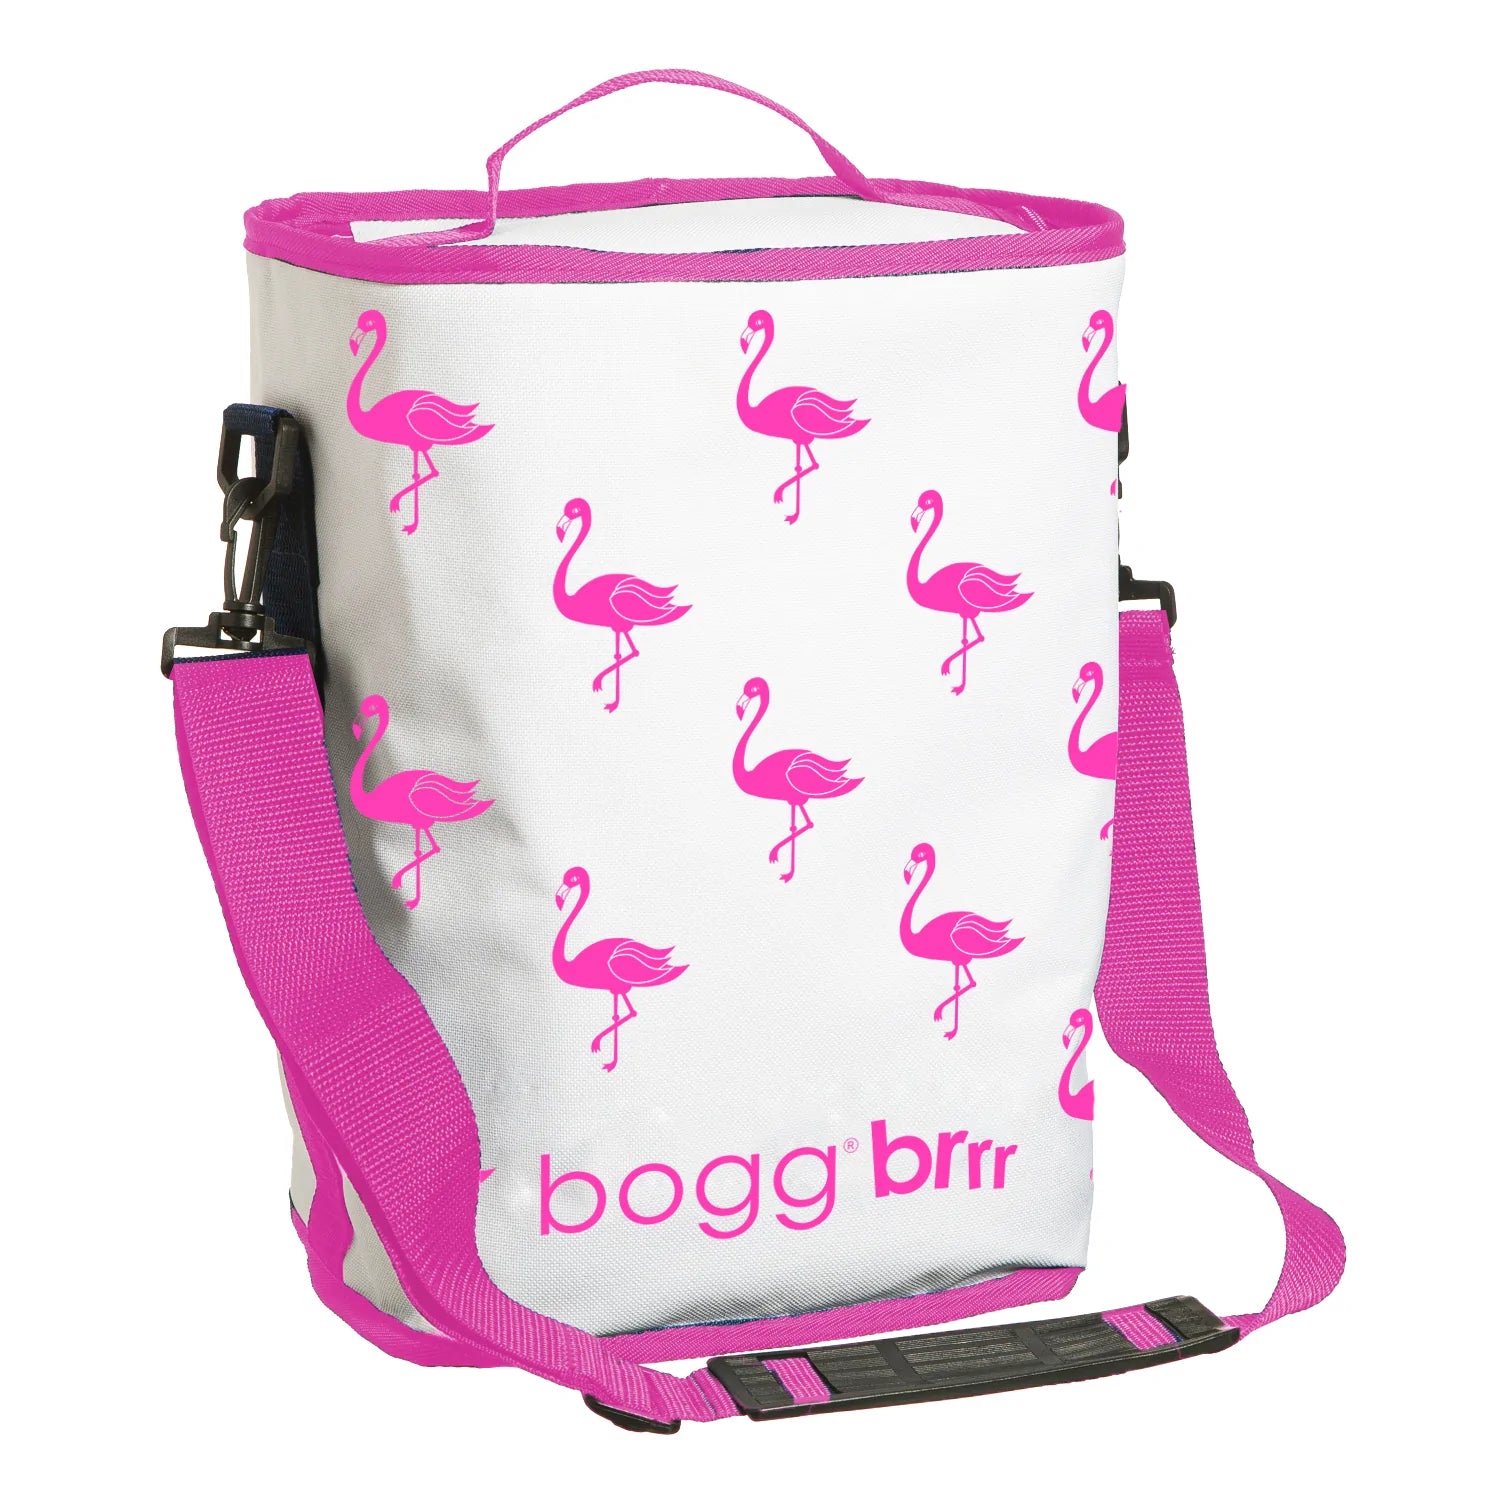 Bogg® Bag Original Bogg® Bag at Von Maur